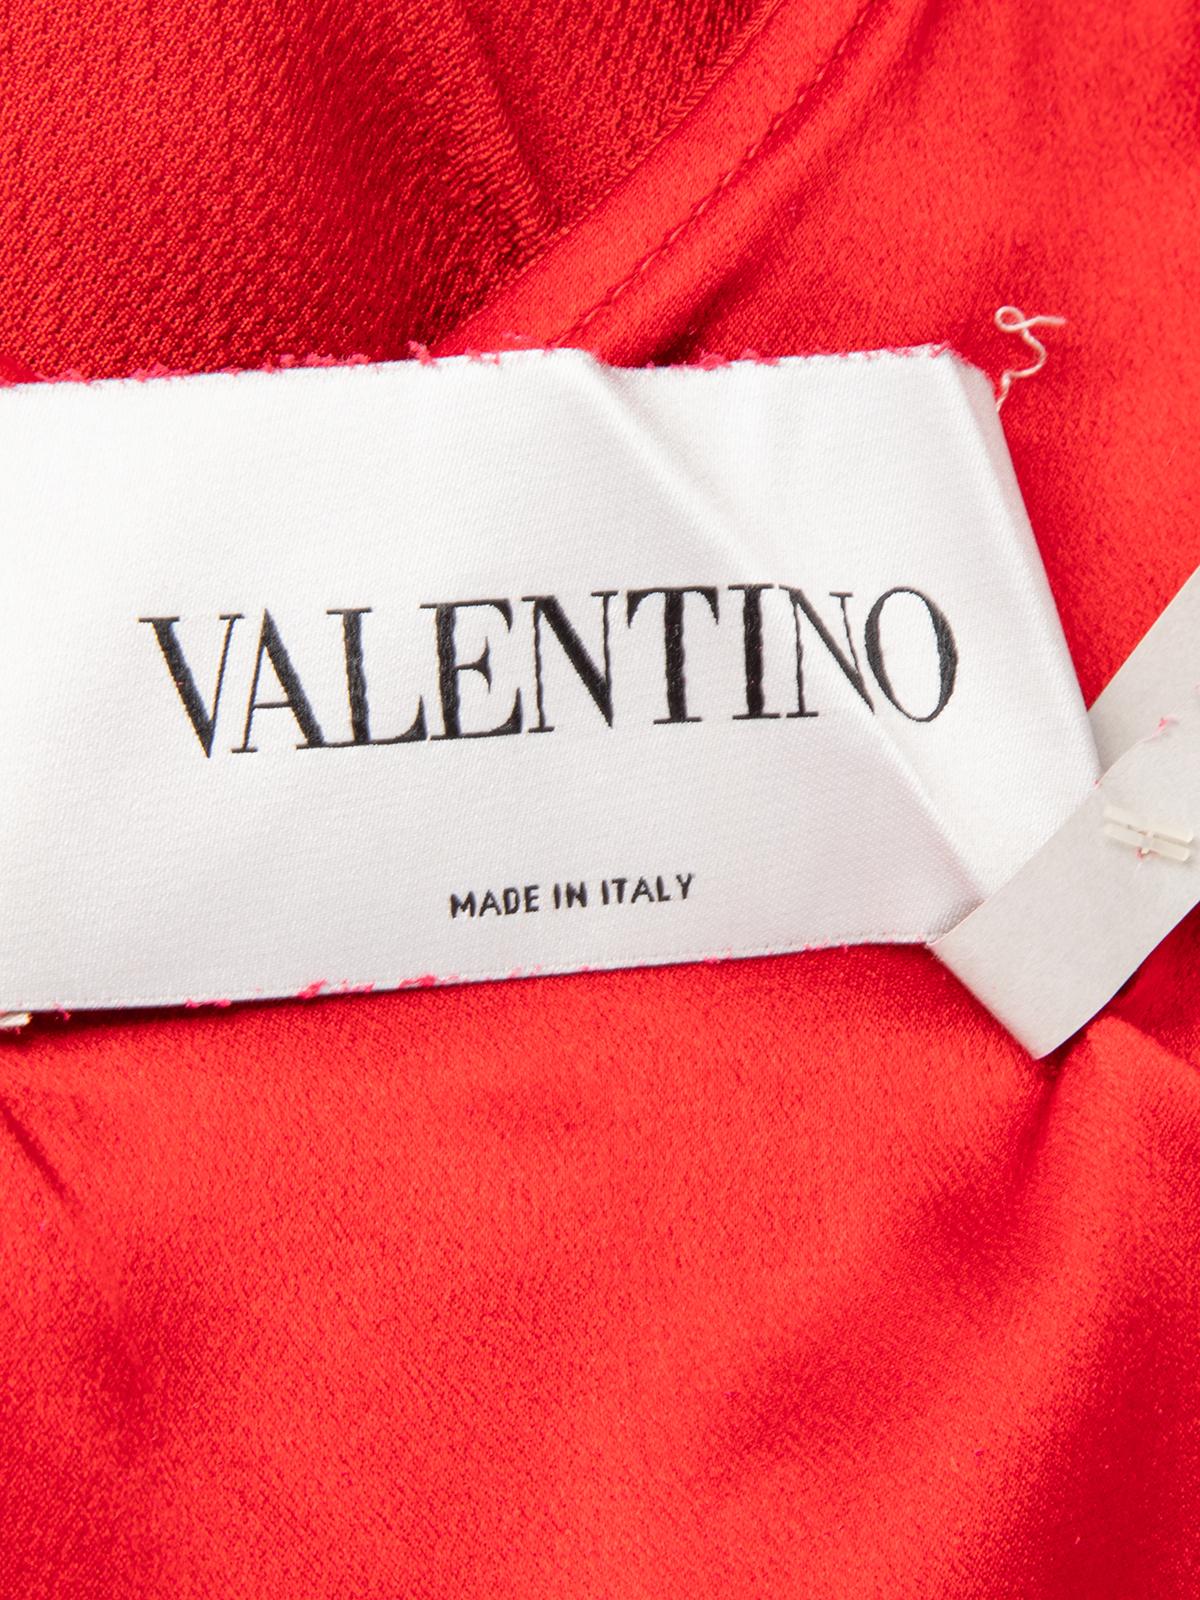 Pre-Loved Valentino Spa Women's Valentino Dress 2